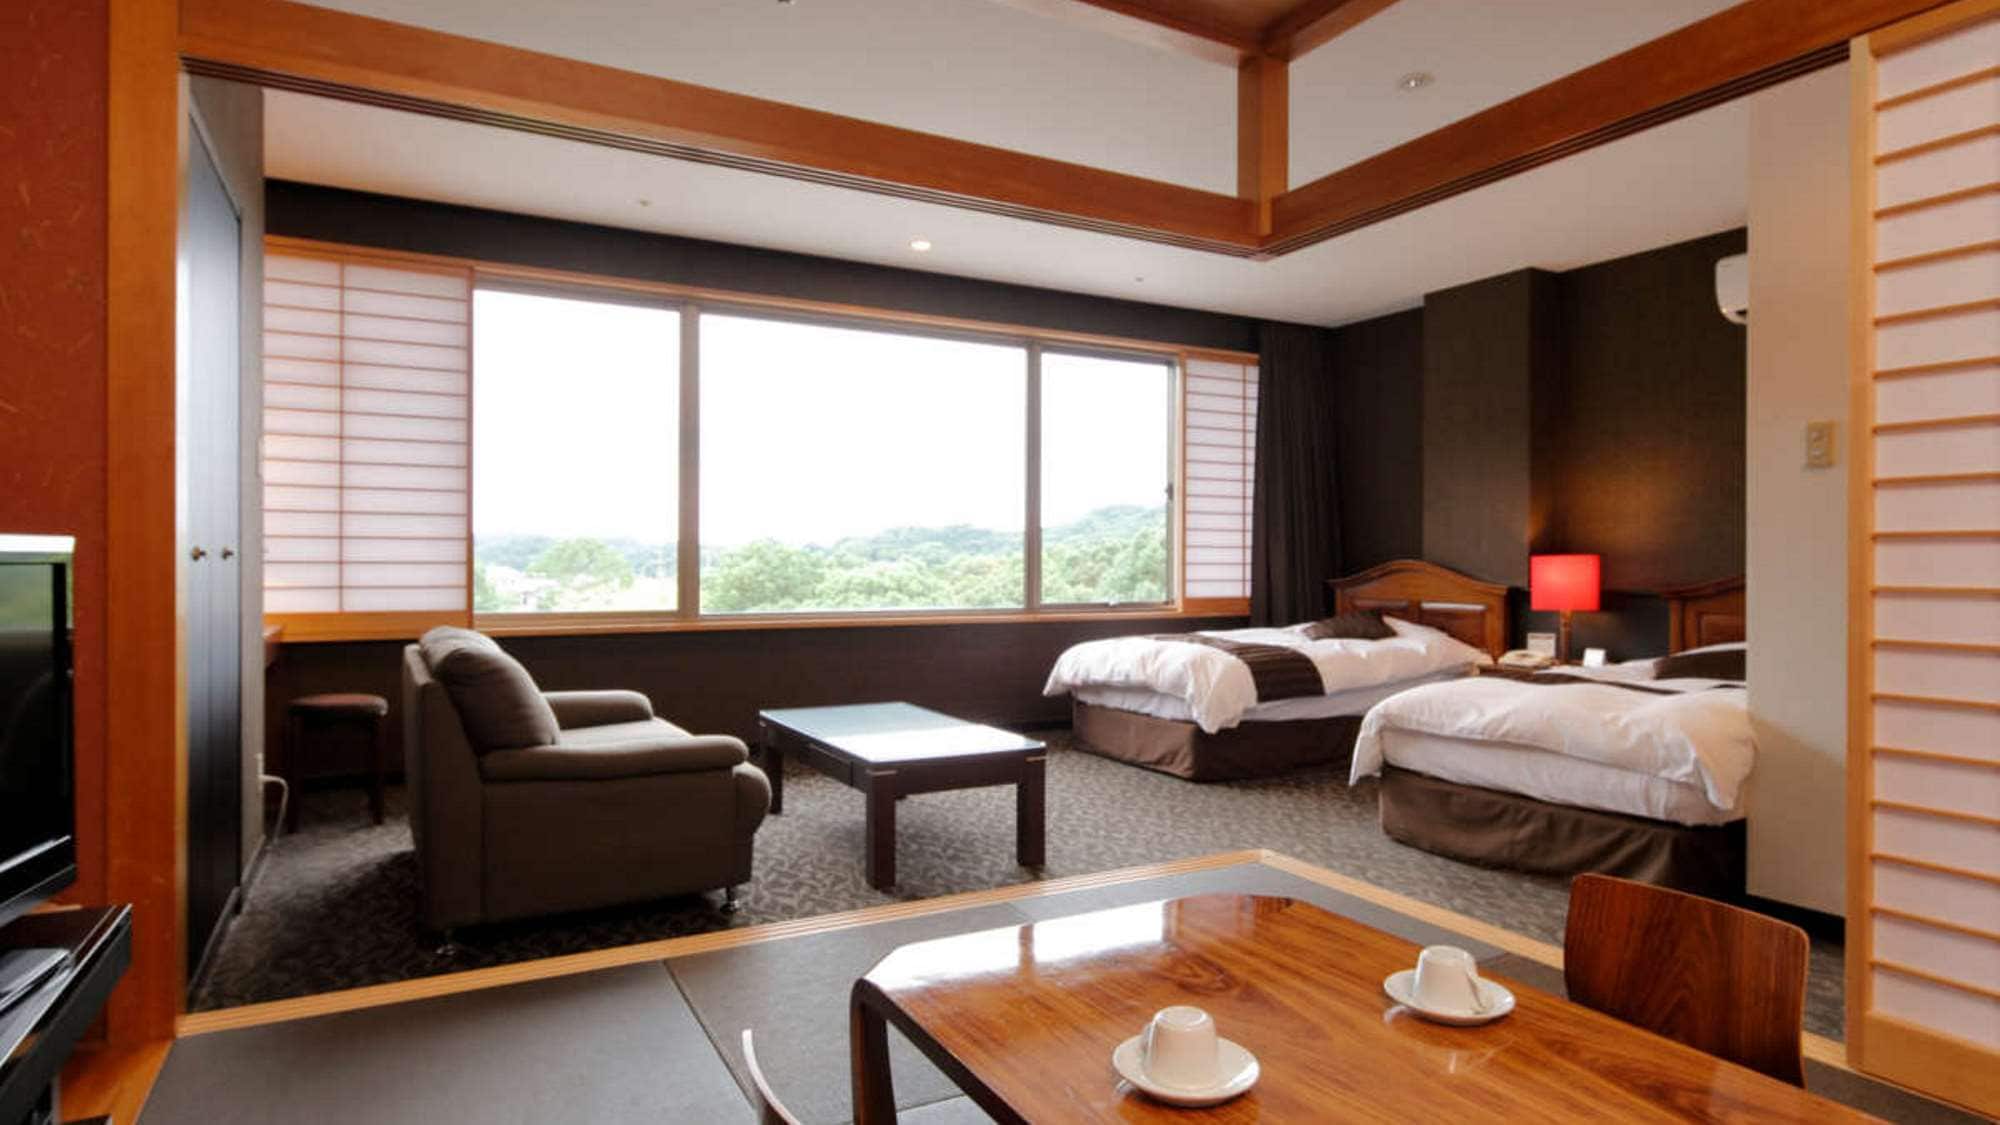 Kamar semi-suite bergaya Jepang-Barat (48㎡) bergaya Jepang dan kamar bergaya Barat dengan 6 tikar tatami.